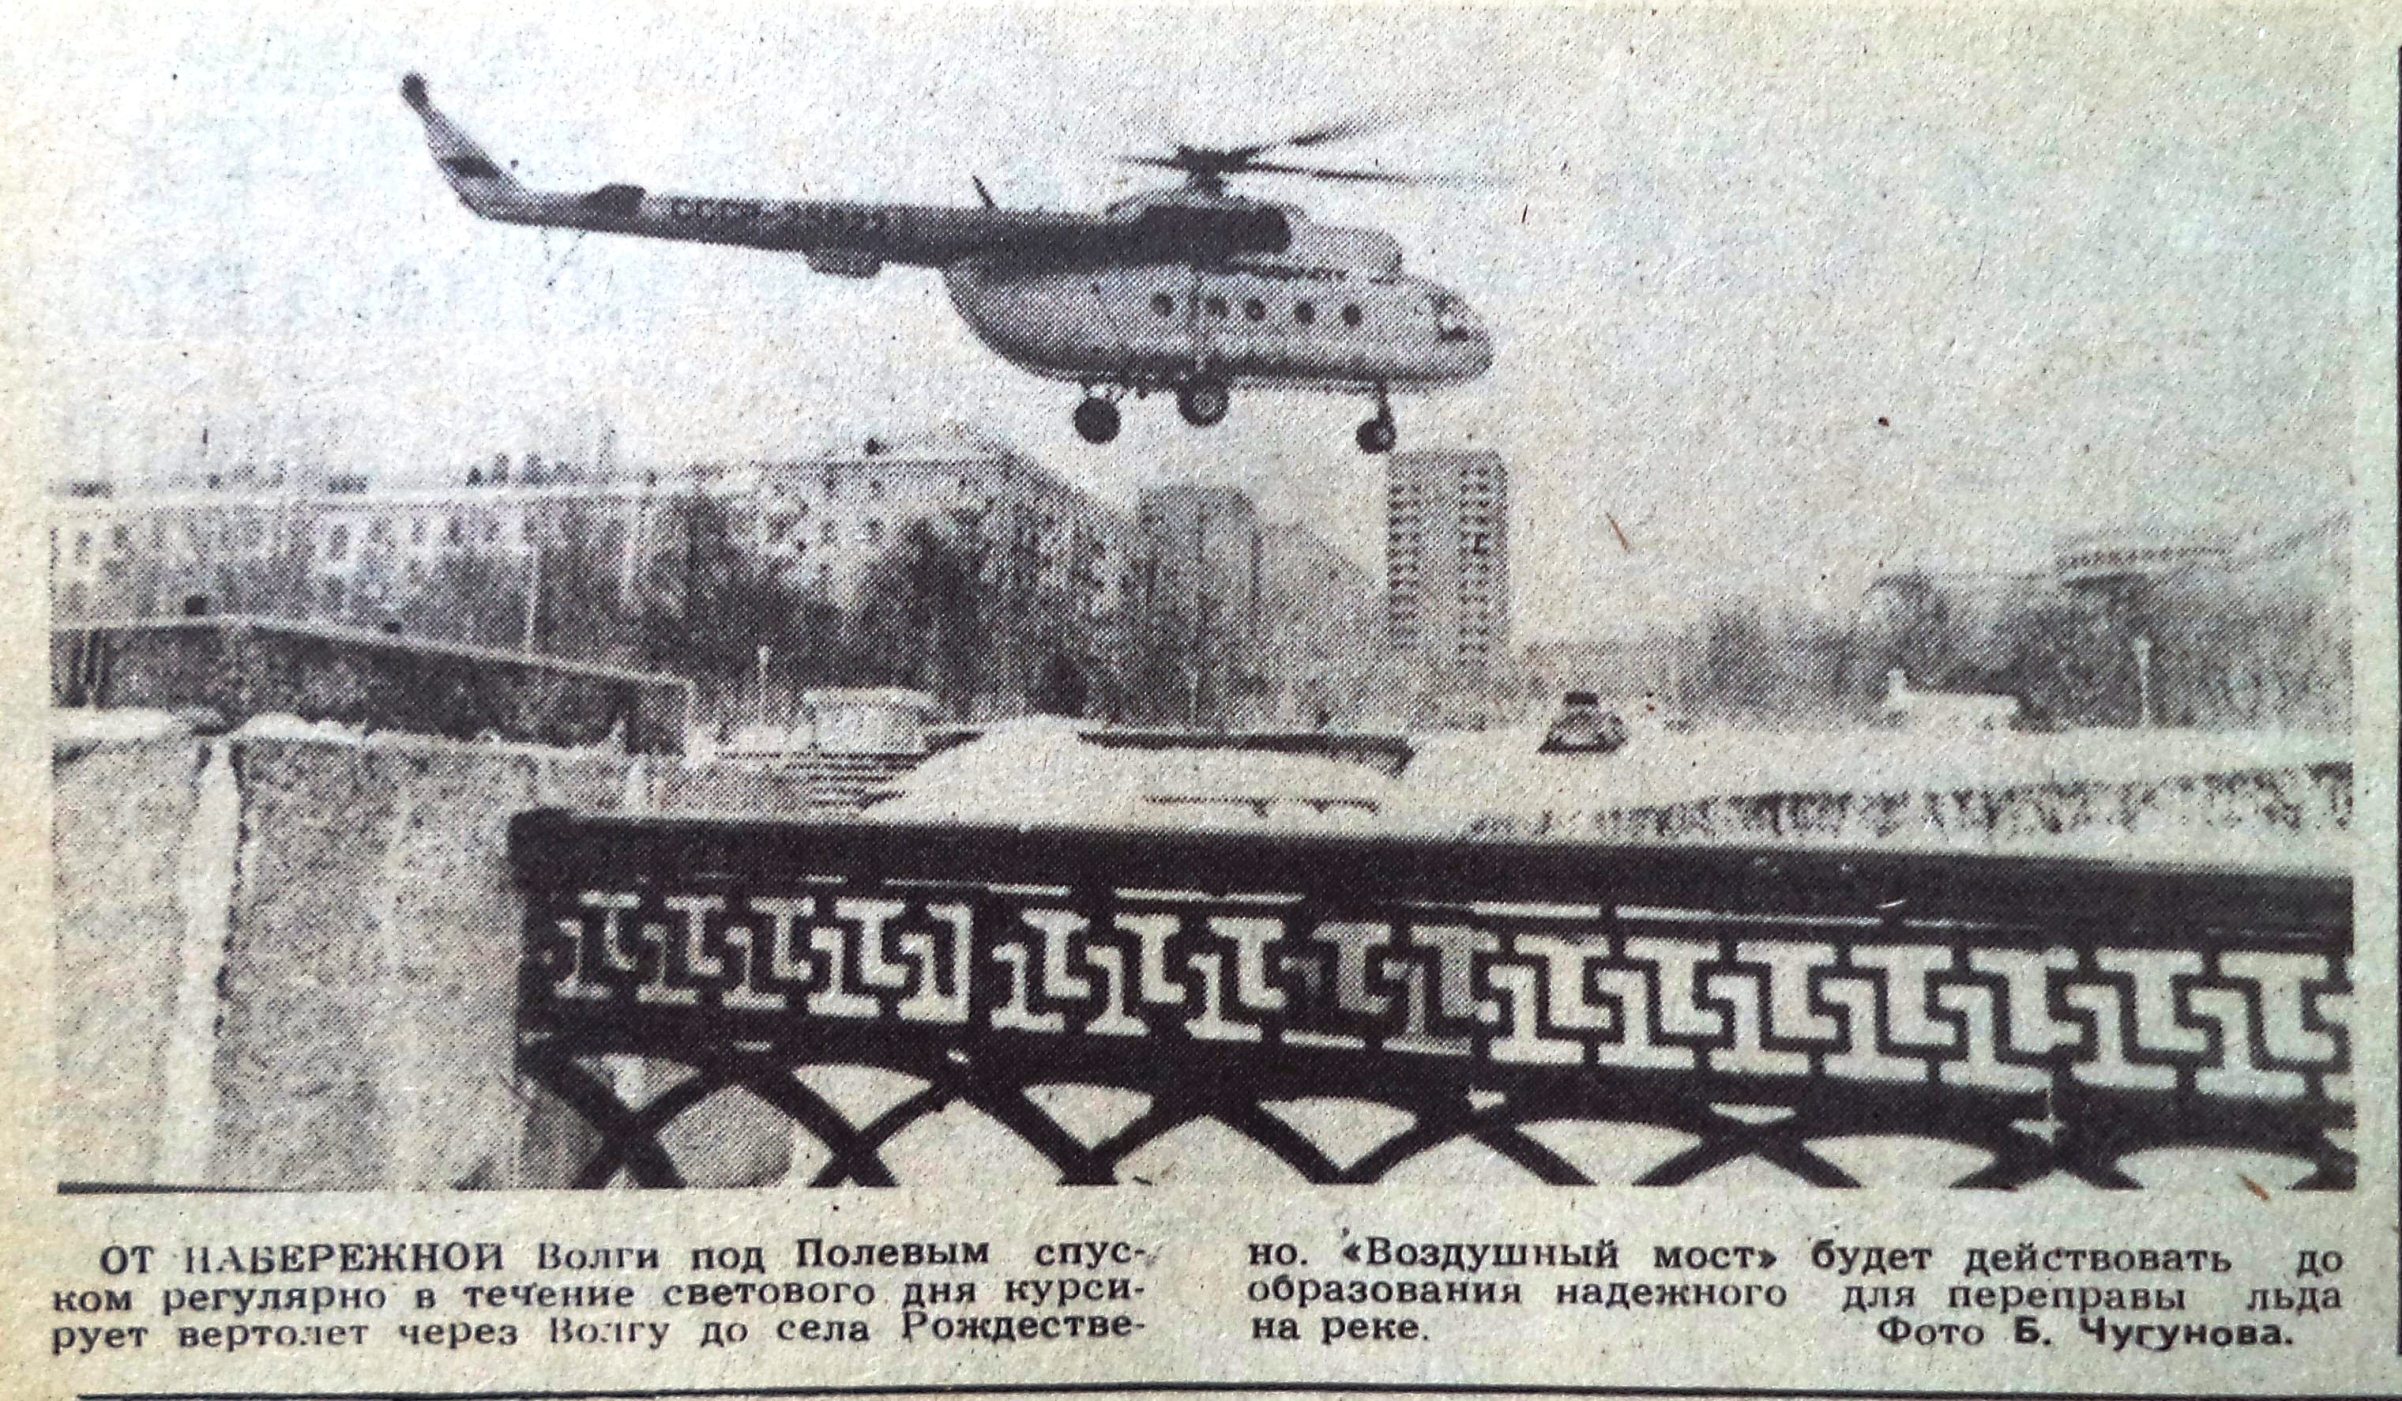 Полевая-ФОТО-34-ВЗя-1988-12-16-вертолёт над Полевым спуском-min